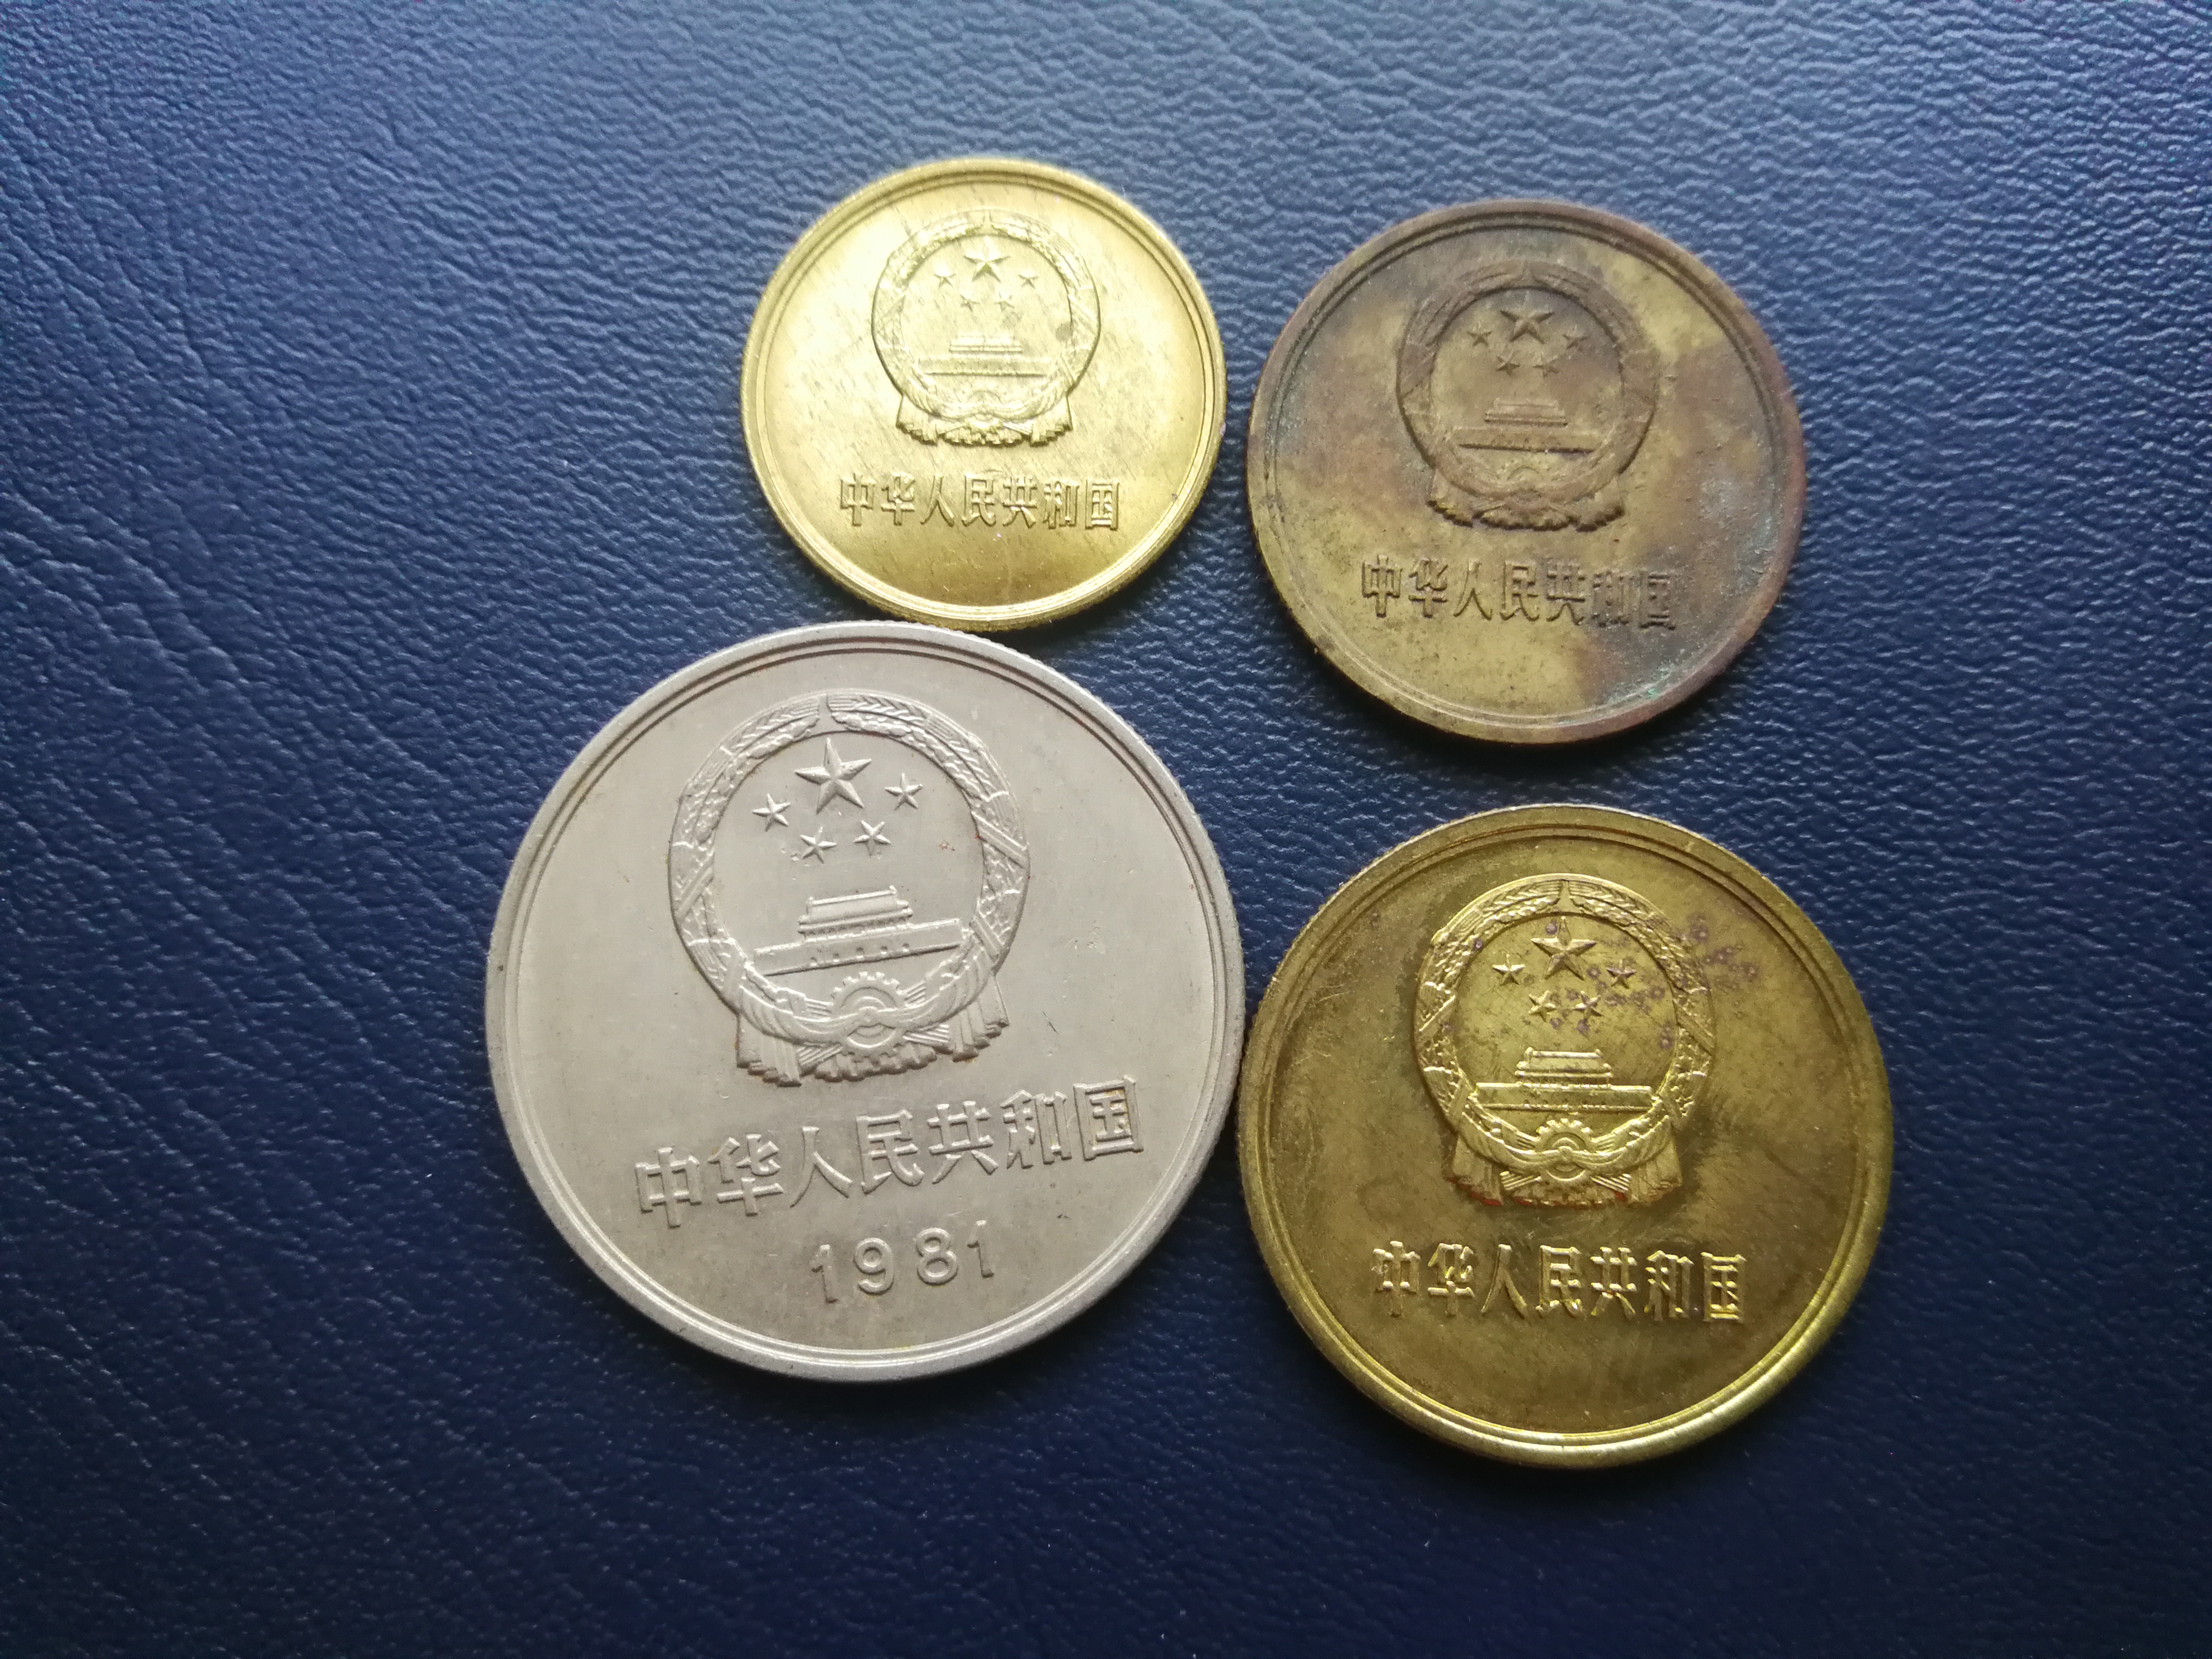 中国硬币大全套158枚图片